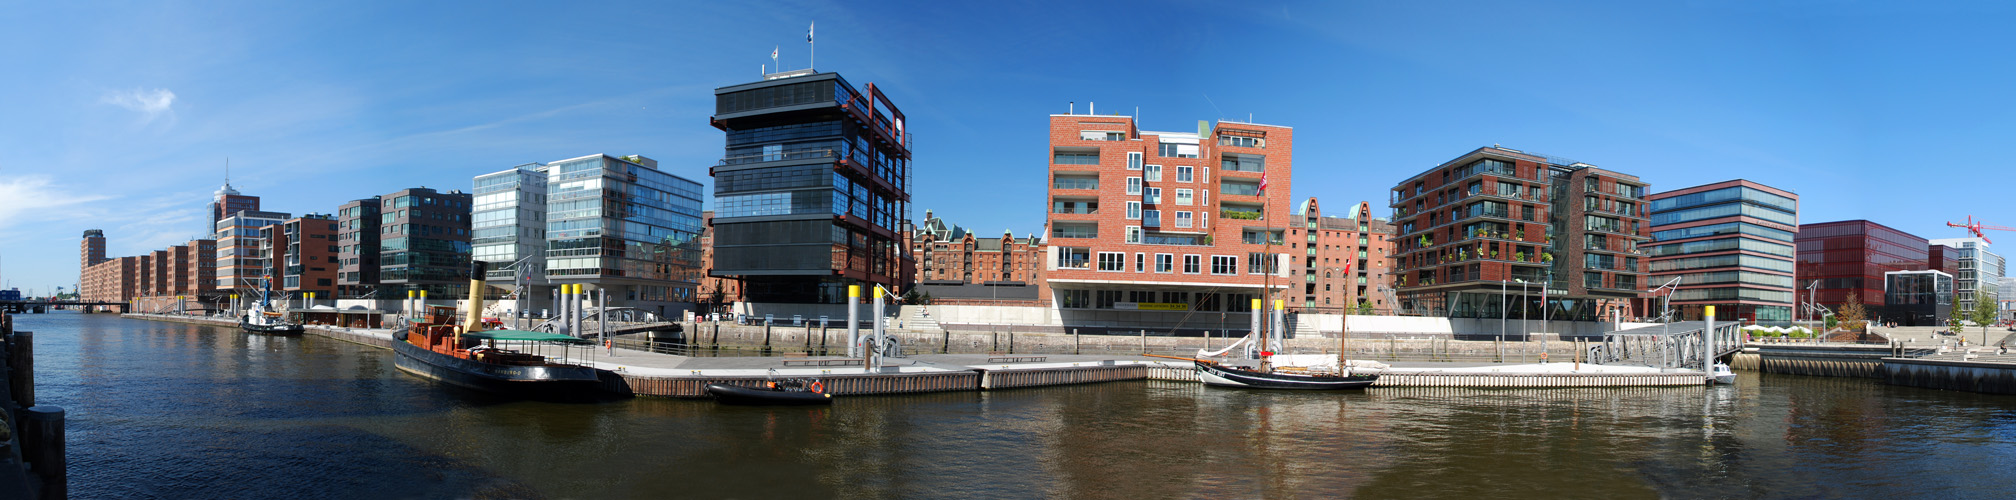 Hamburg Medienhafen